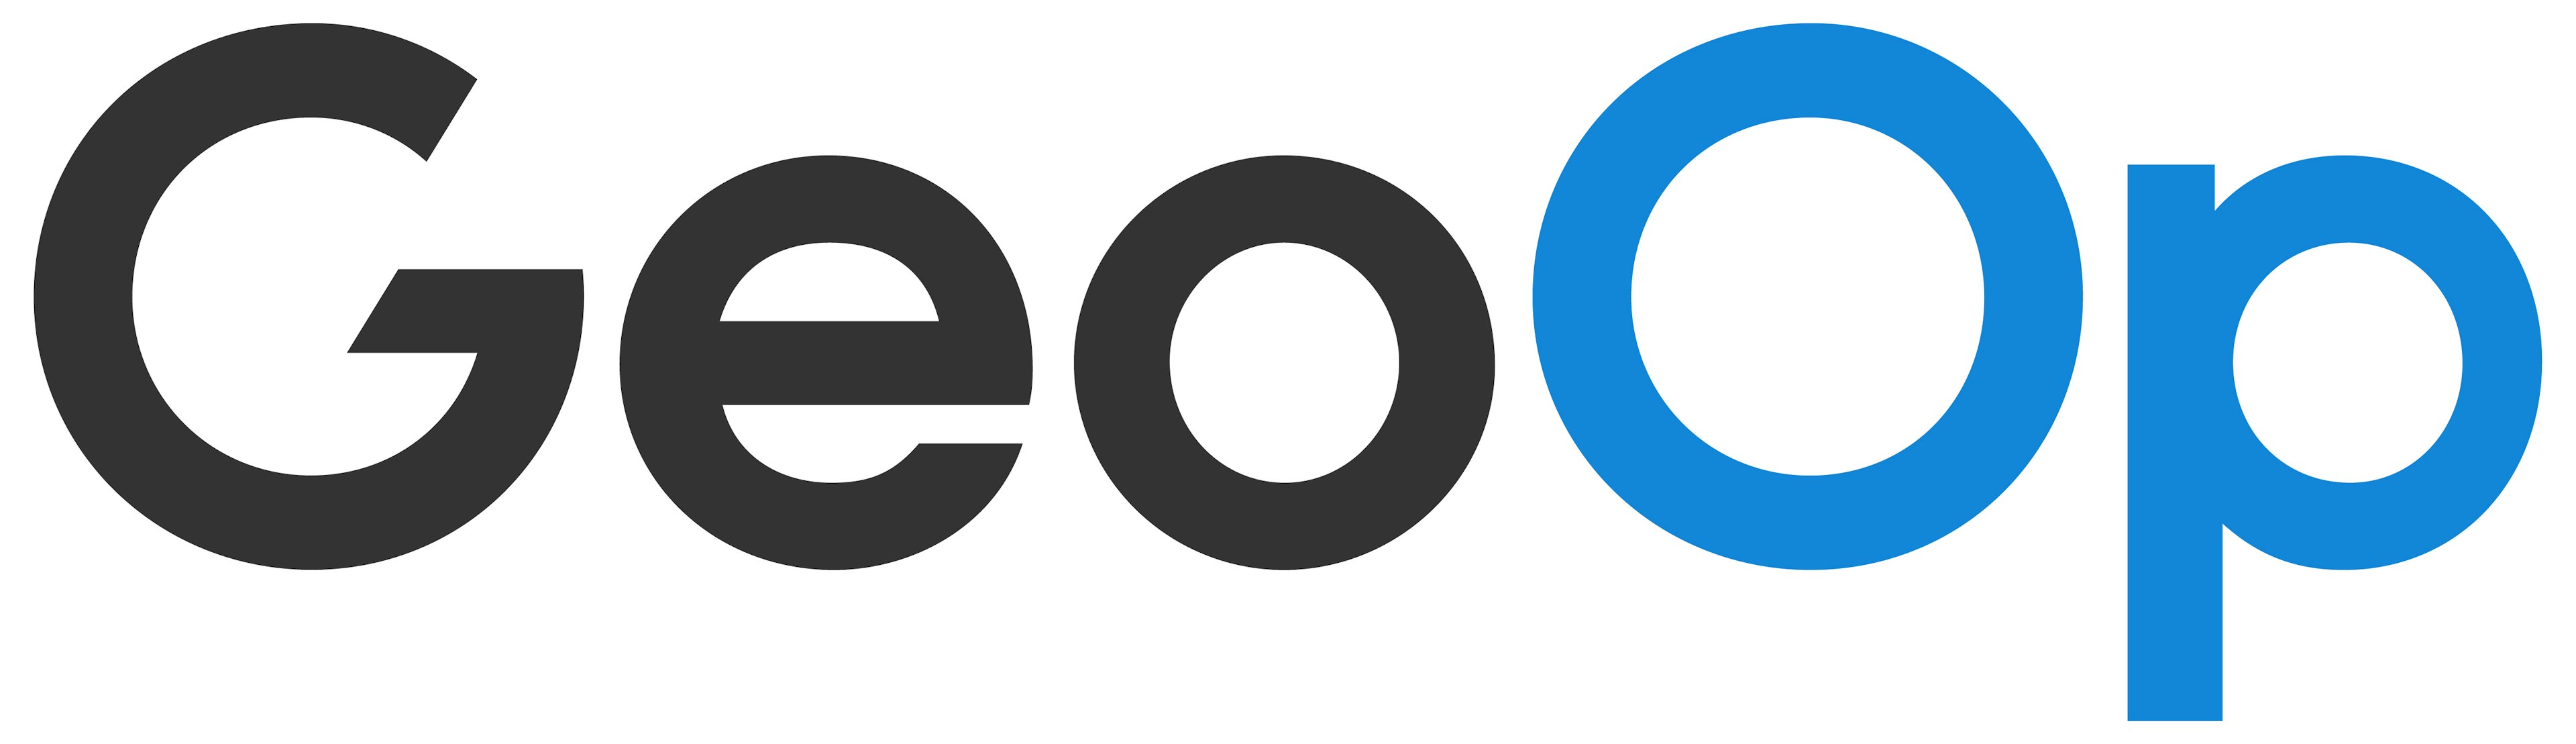 GeoOp Logo